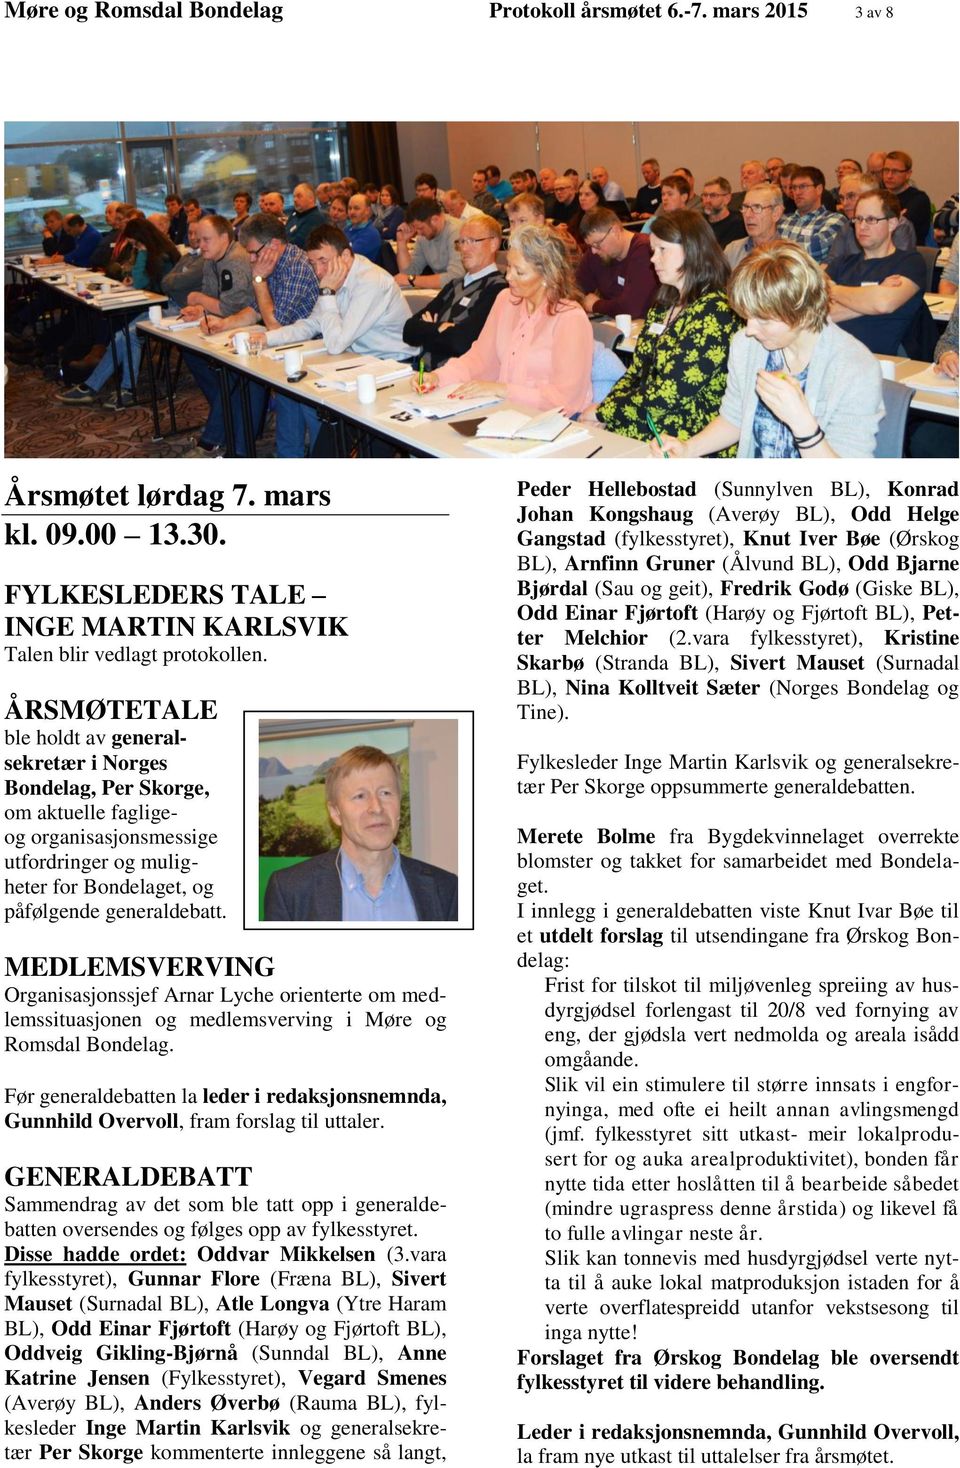 MEDLEMSVERVING Organisasjonssjef Arnar Lyche orienterte om medlemssituasjonen og medlemsverving i Møre og Romsdal Bondelag.